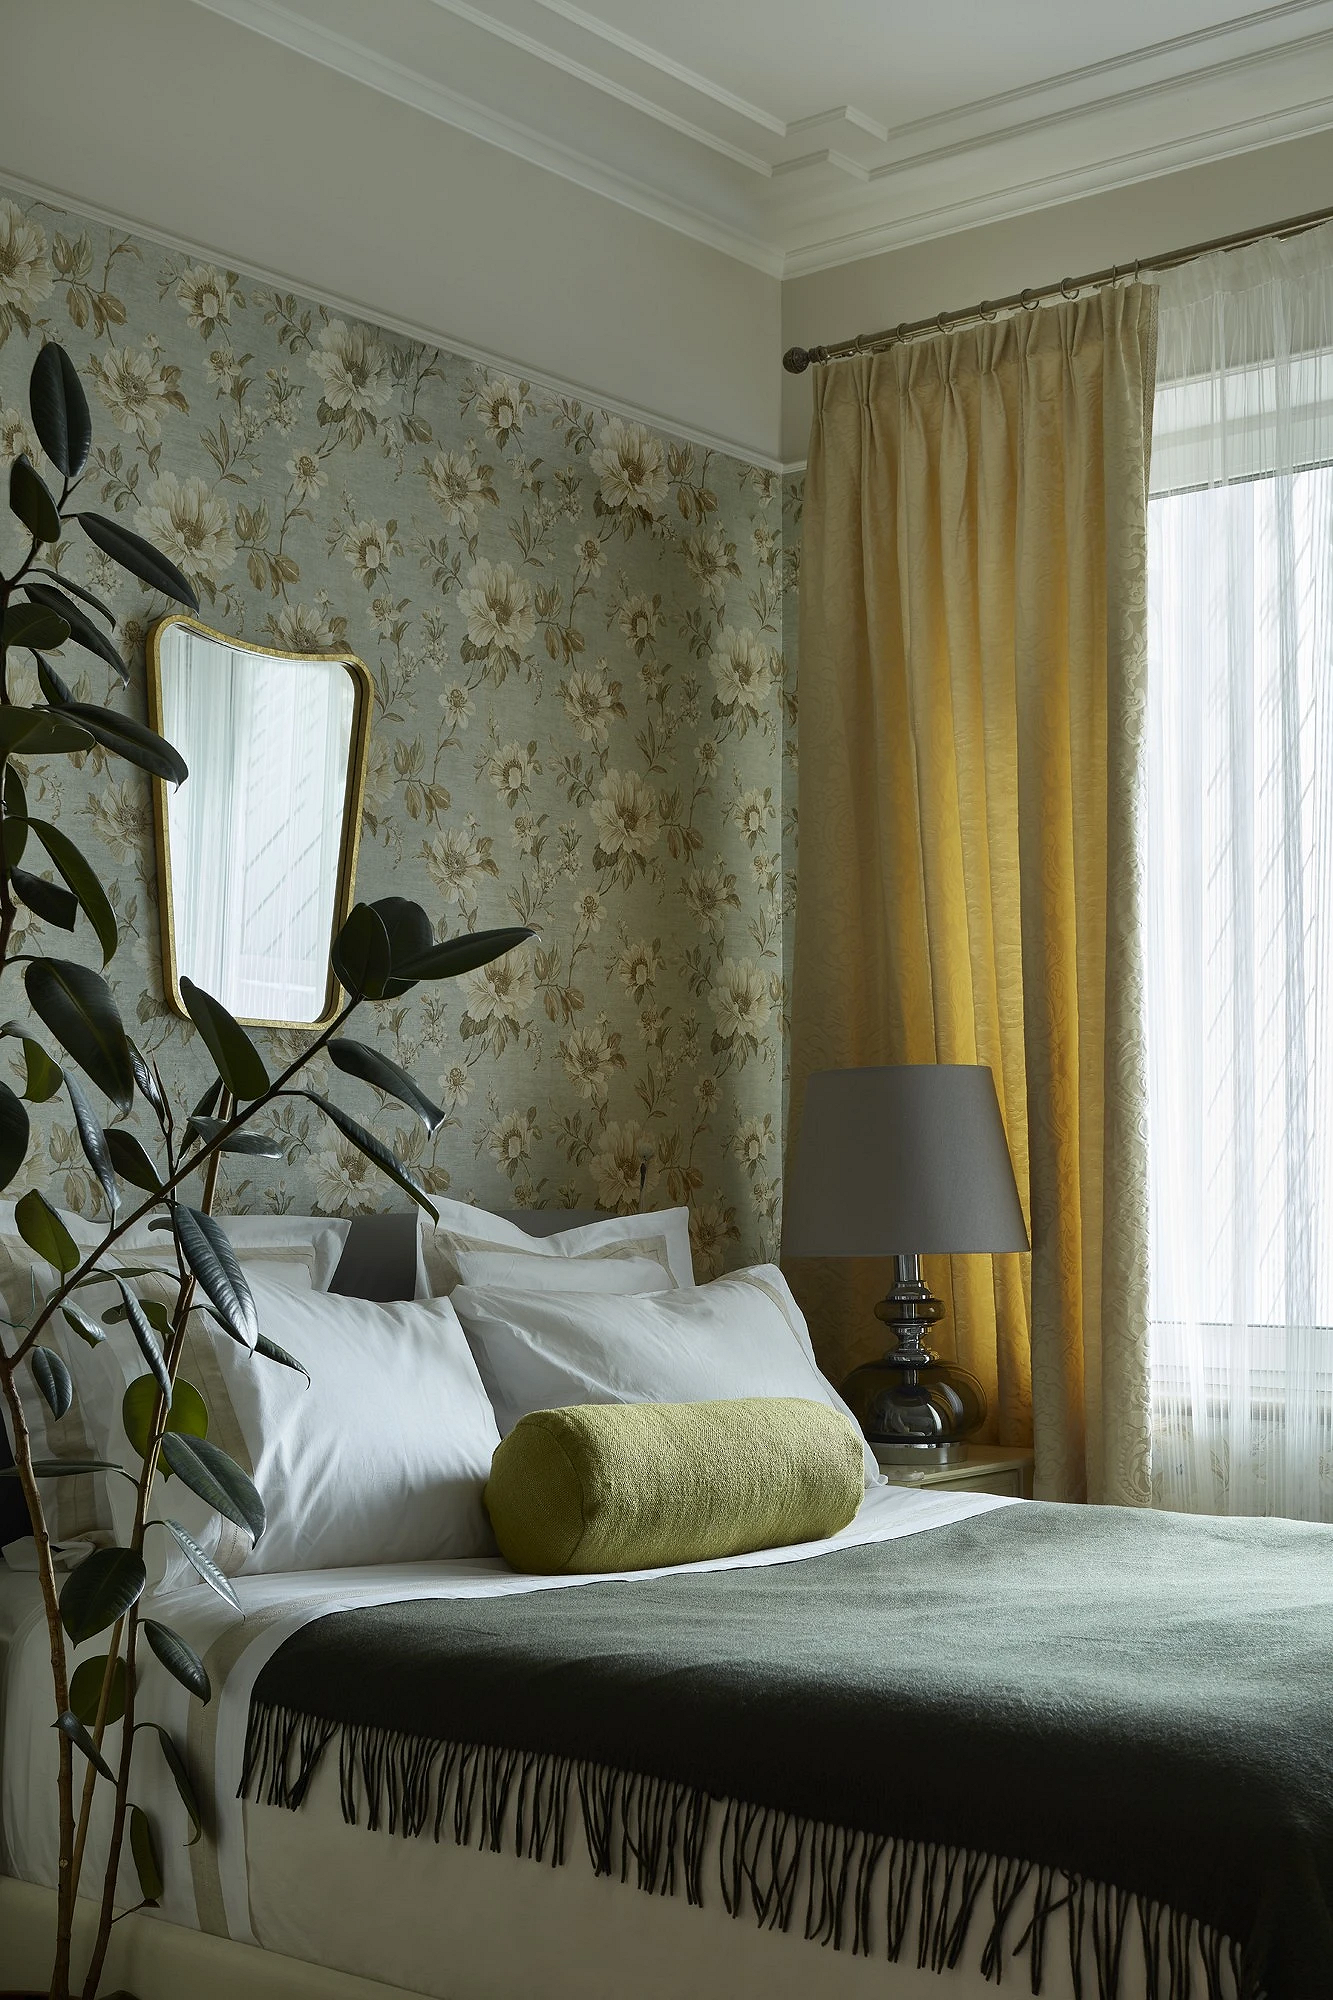 Как дизайнеры оформляют свои спальни? 6 красивых комнат из проектов профи6